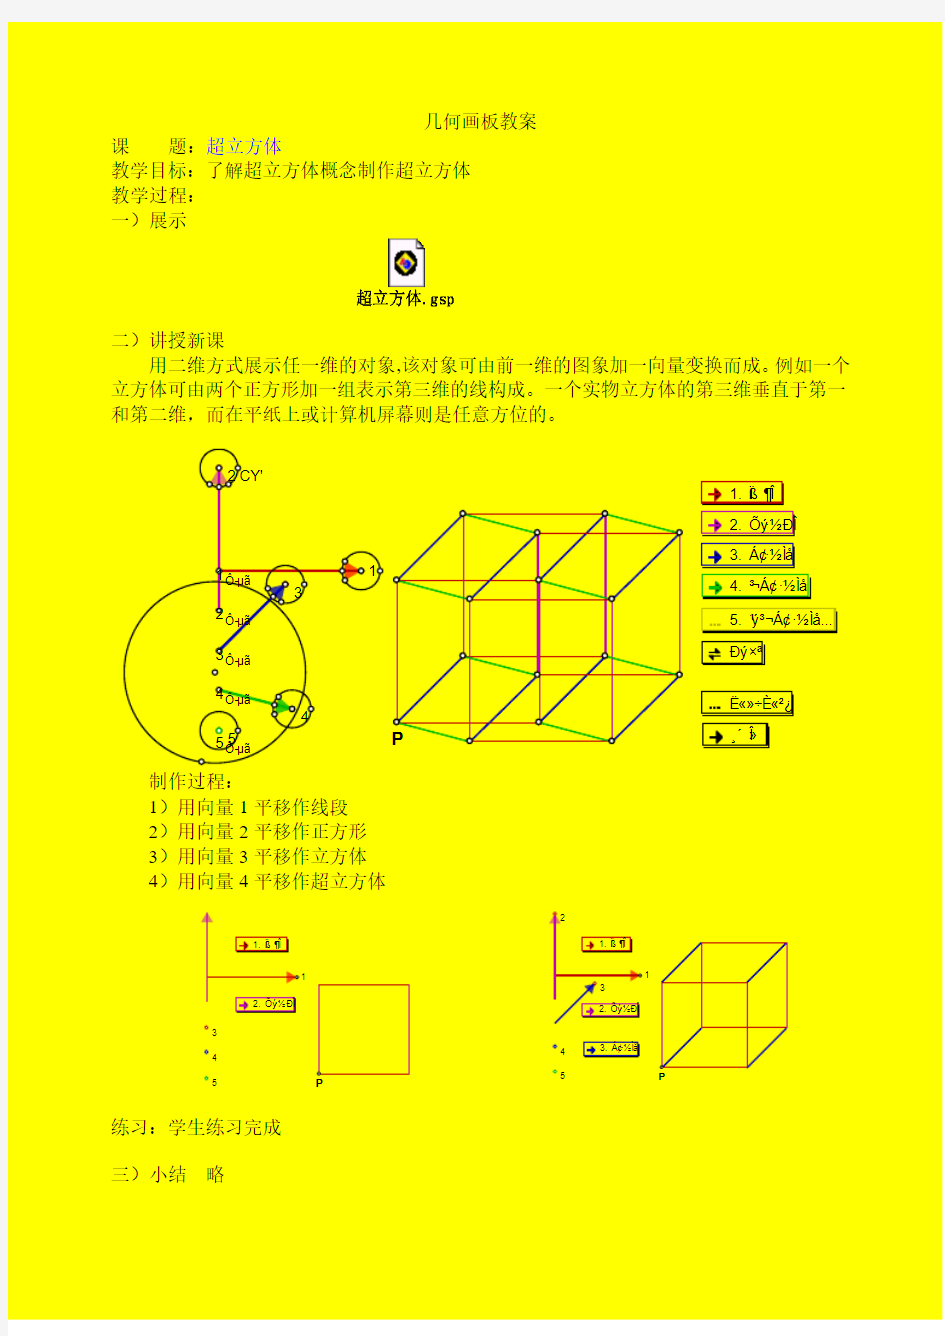 几何画板教案(超立方体)